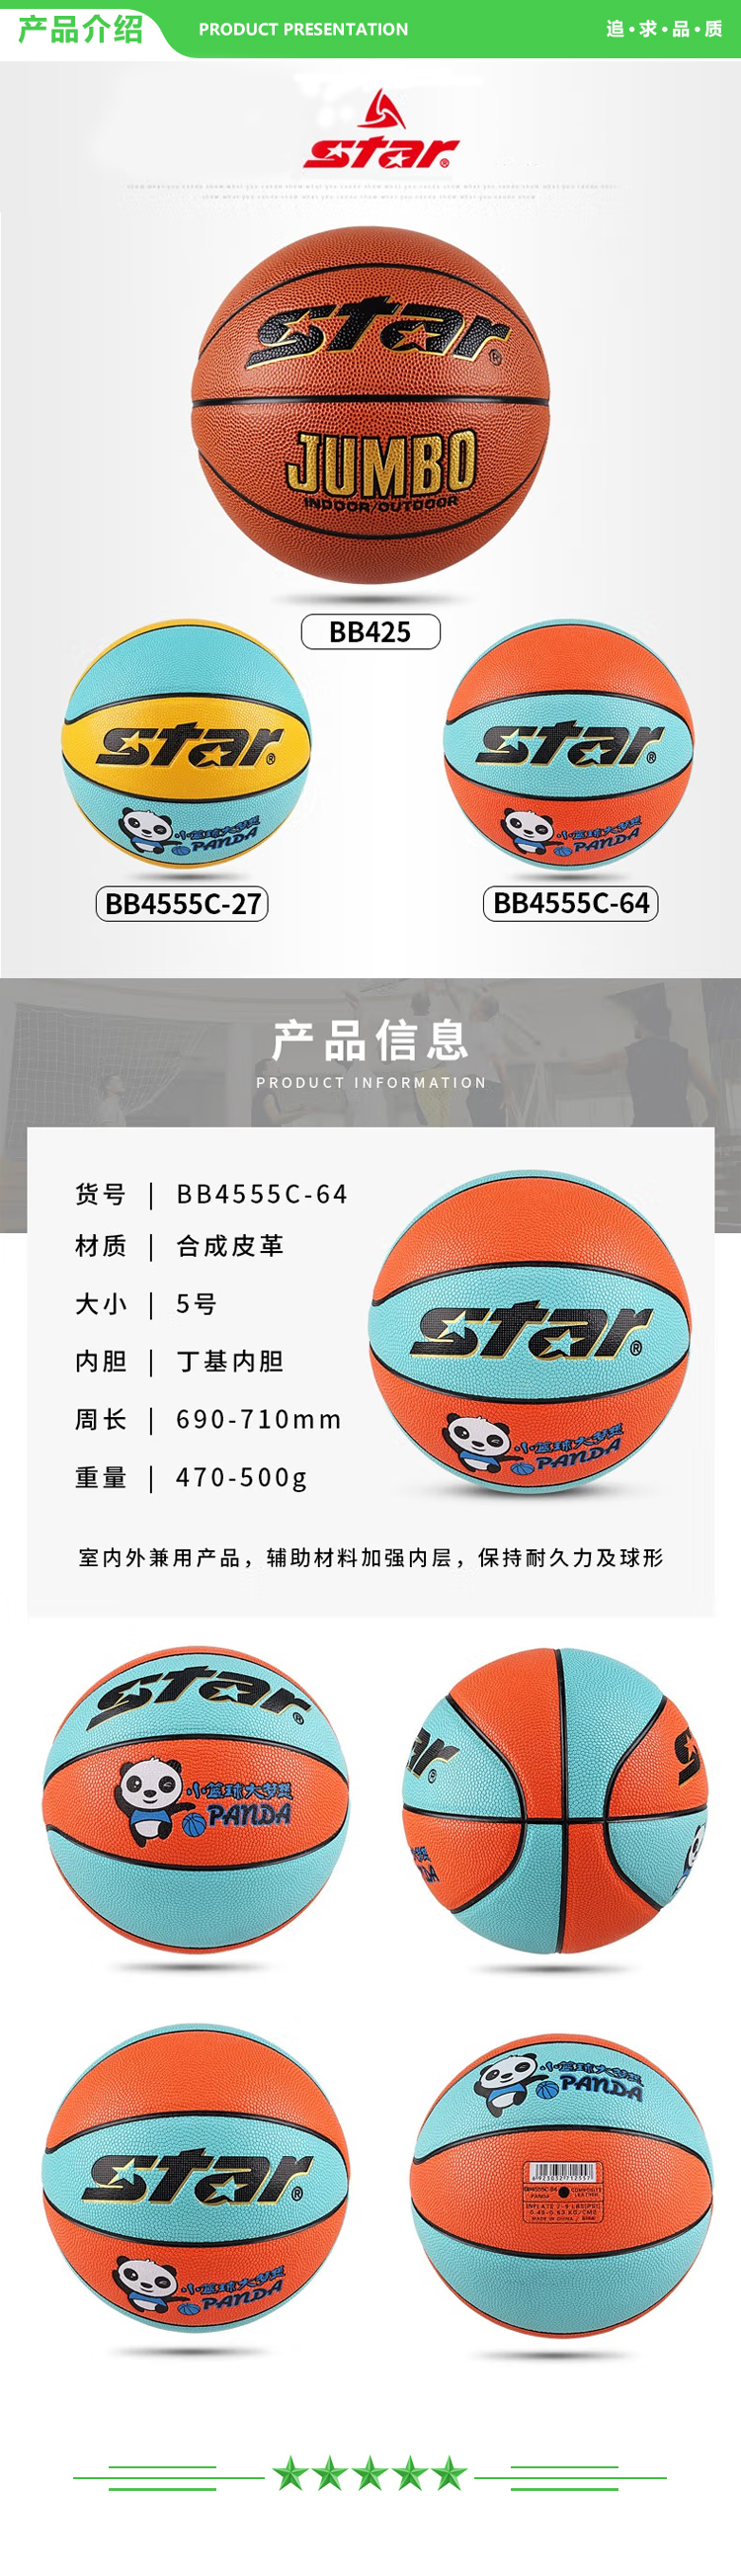 世达 star BB4555C-64（5号儿童用篮球）橙蓝色 篮球 儿童5号篮球青少年中学生室内外防滑耐磨蓝球 2.jpg